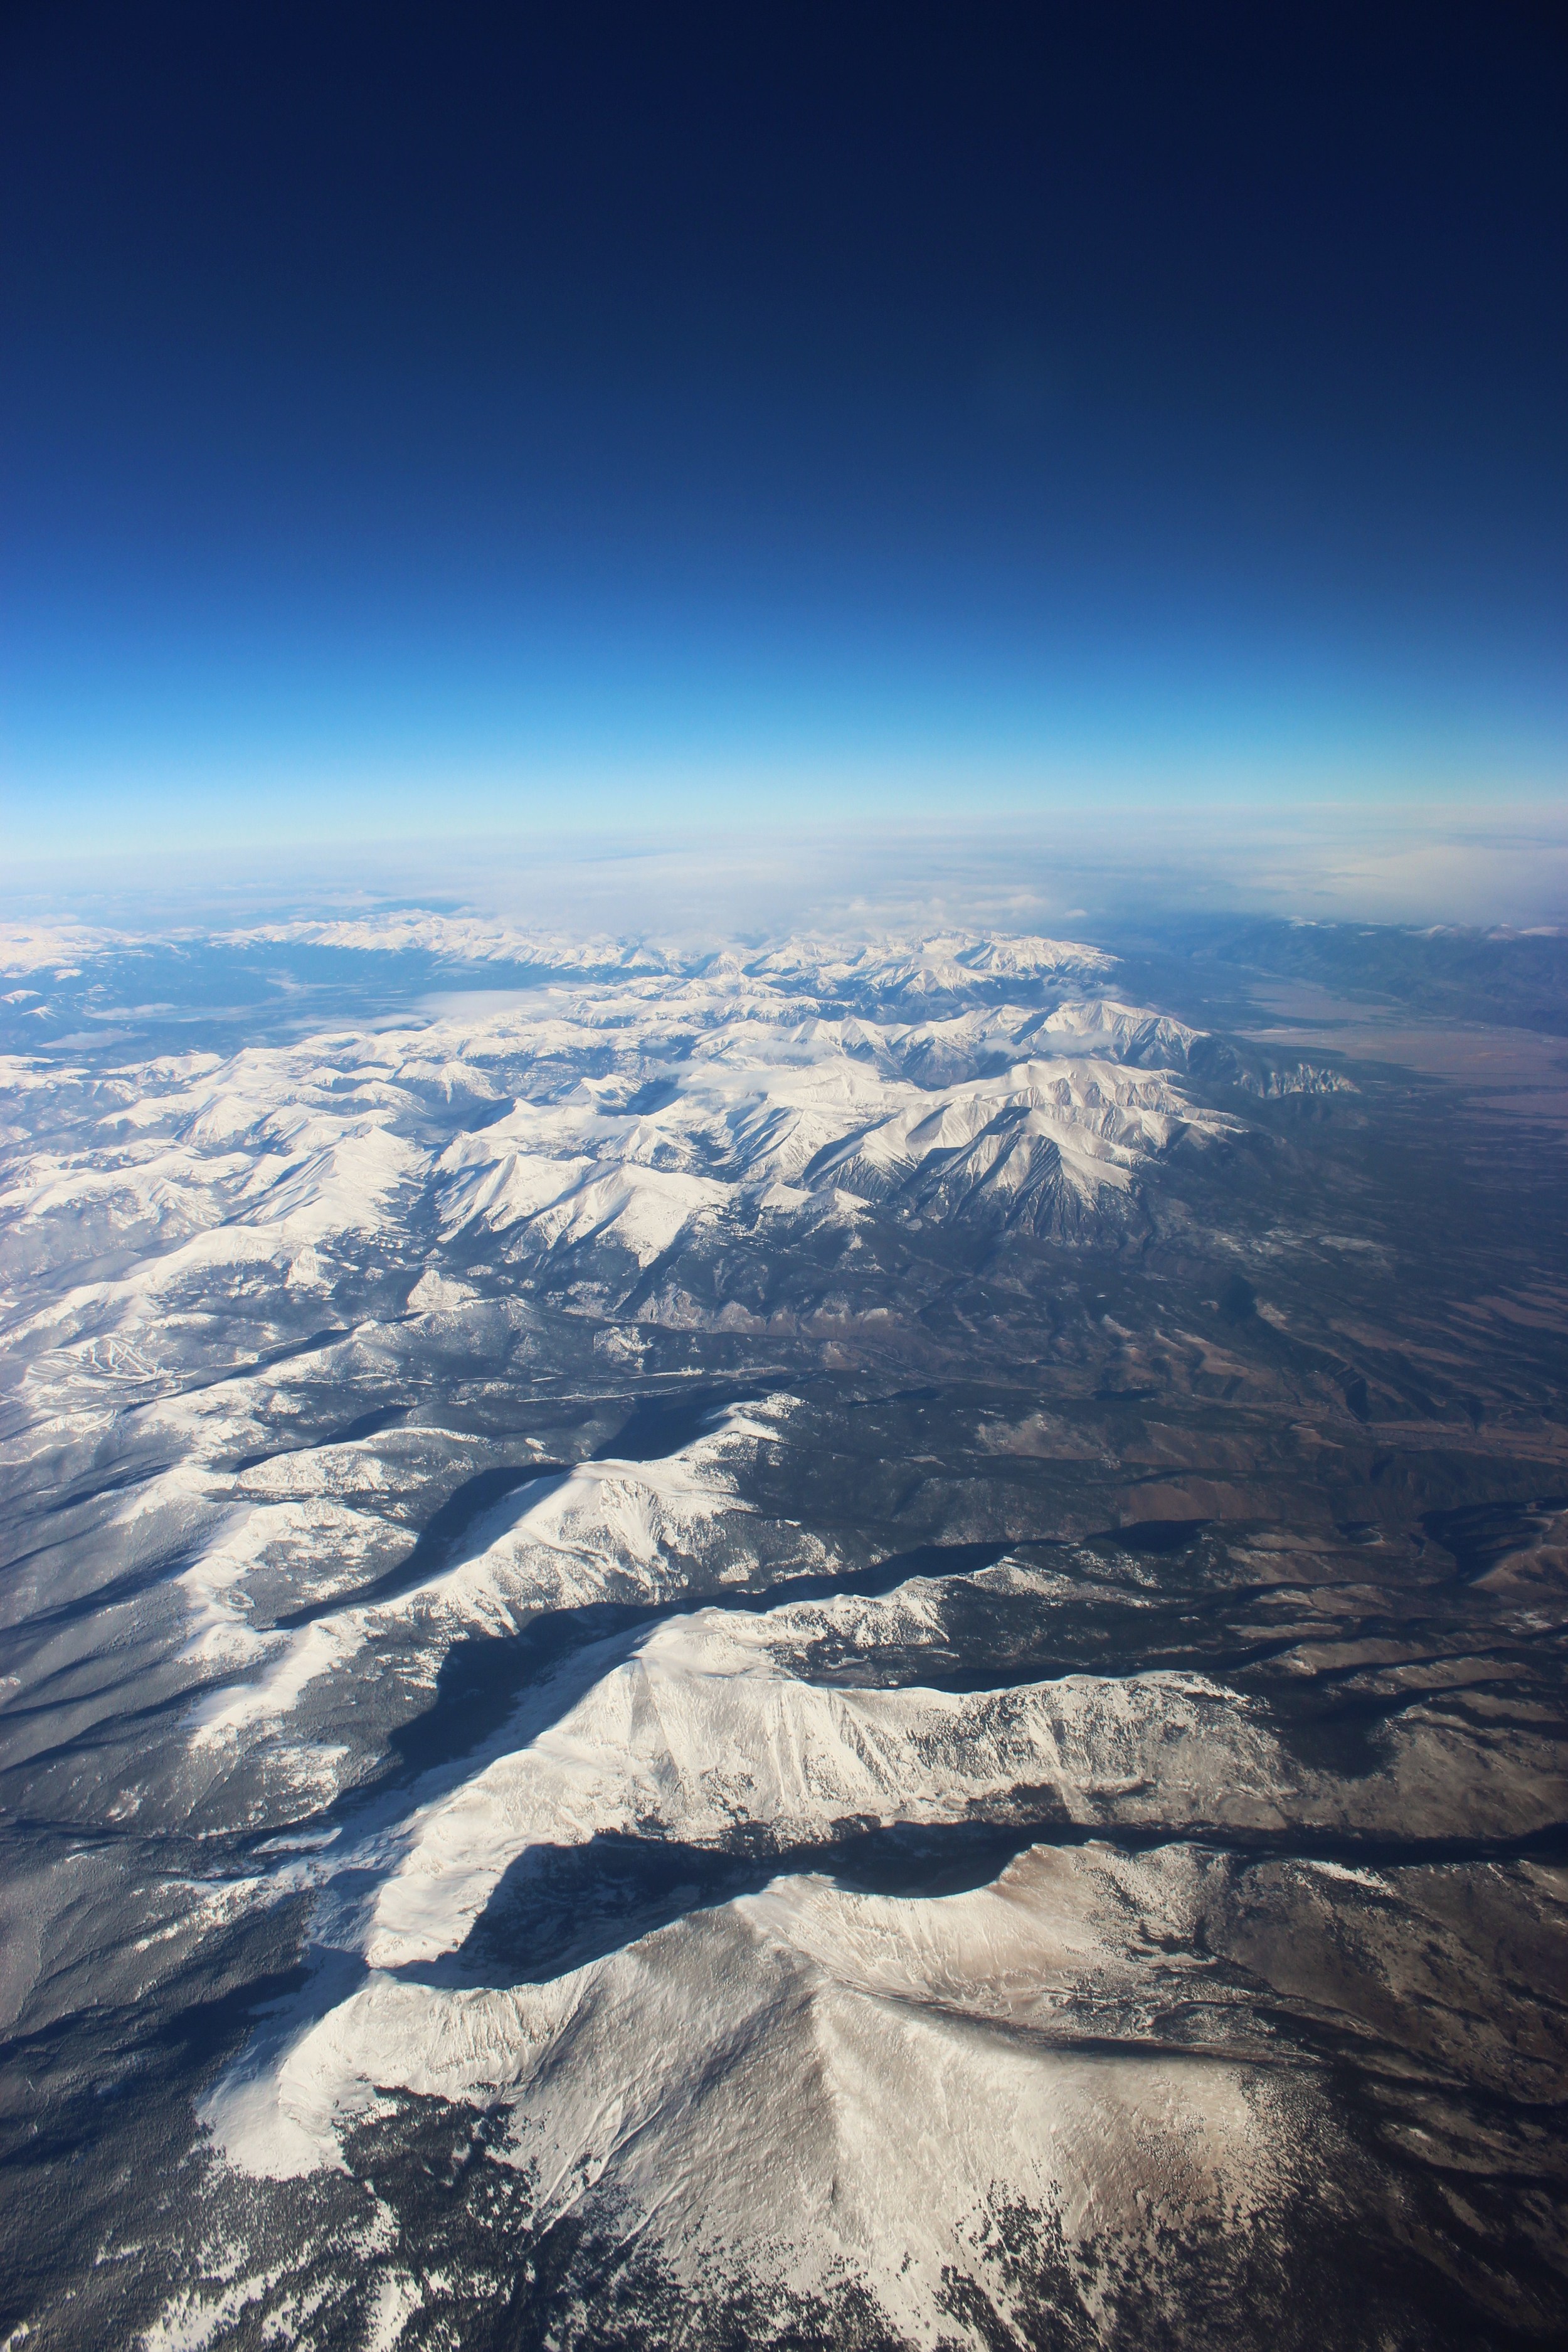 Rockies at 30,000 feet